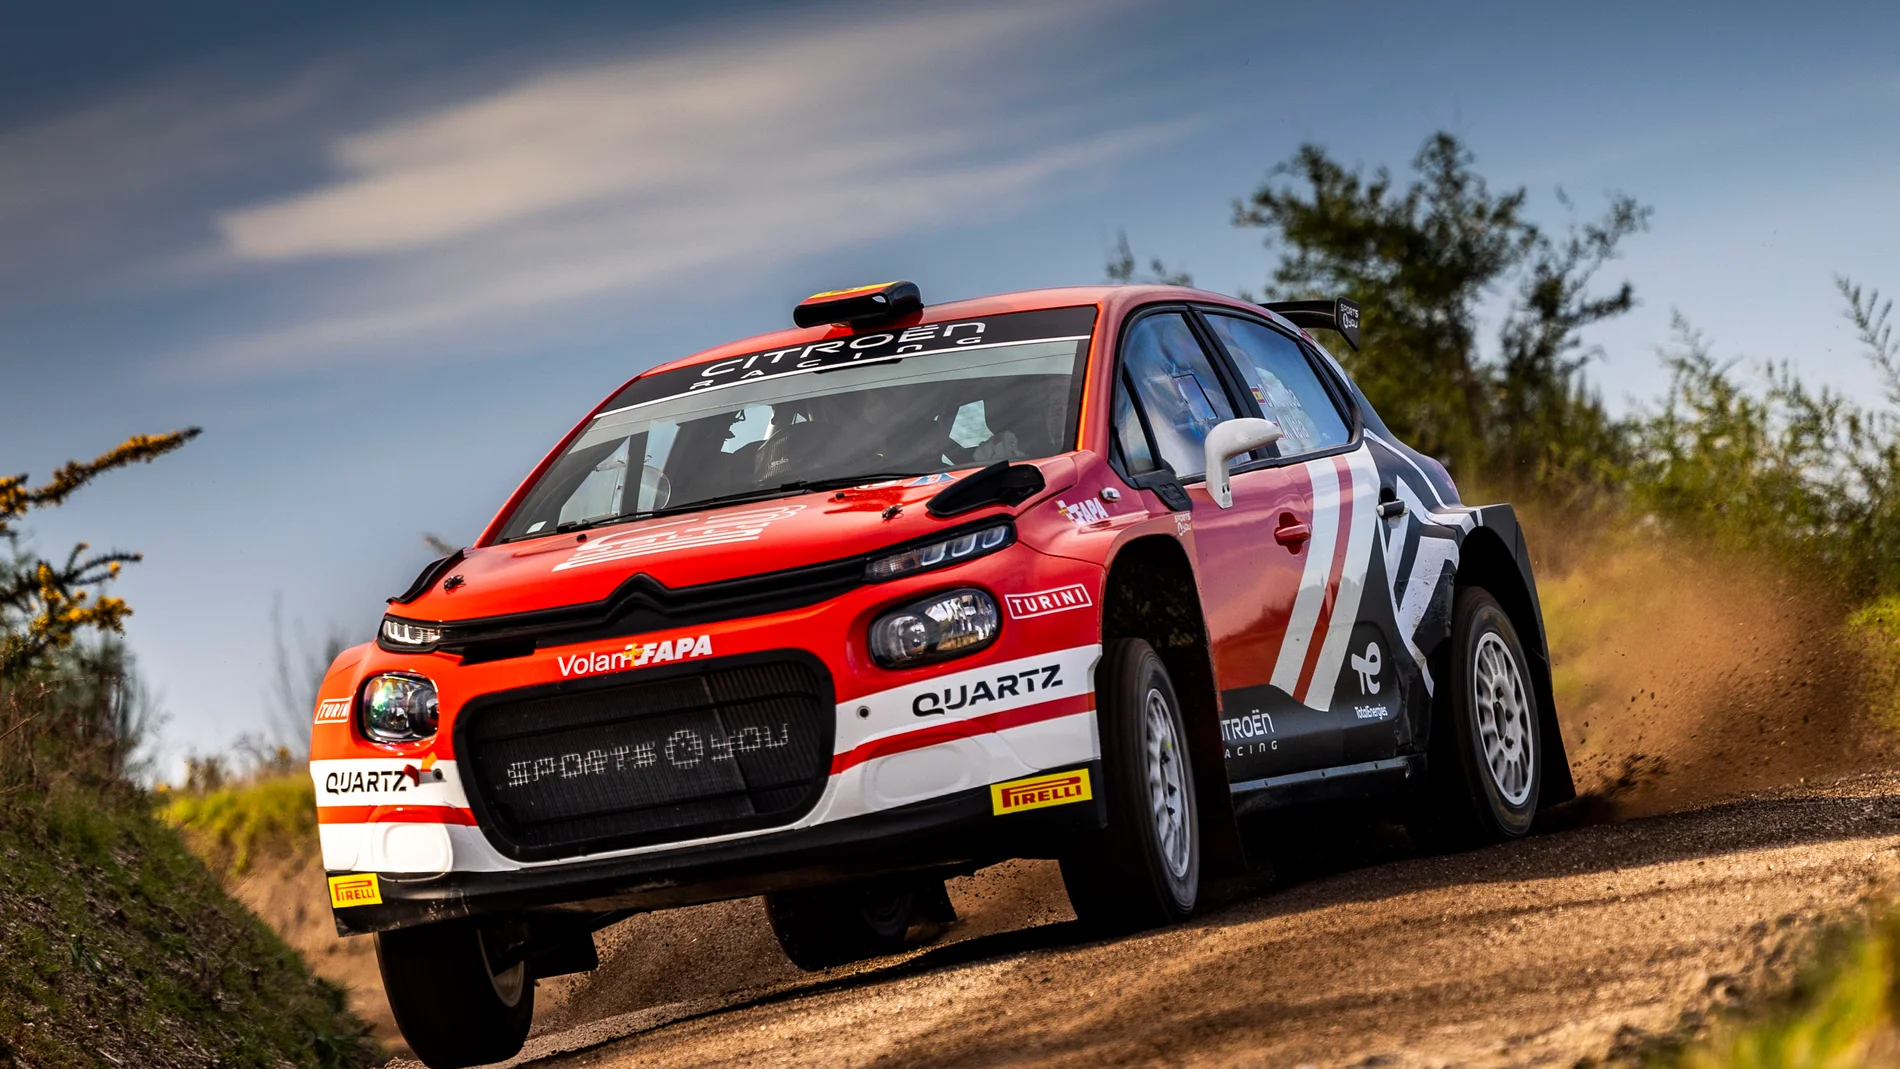 Citroën y Diego Ruiloba, juntos para intentar ganar el Campeonato de España de Super-rally